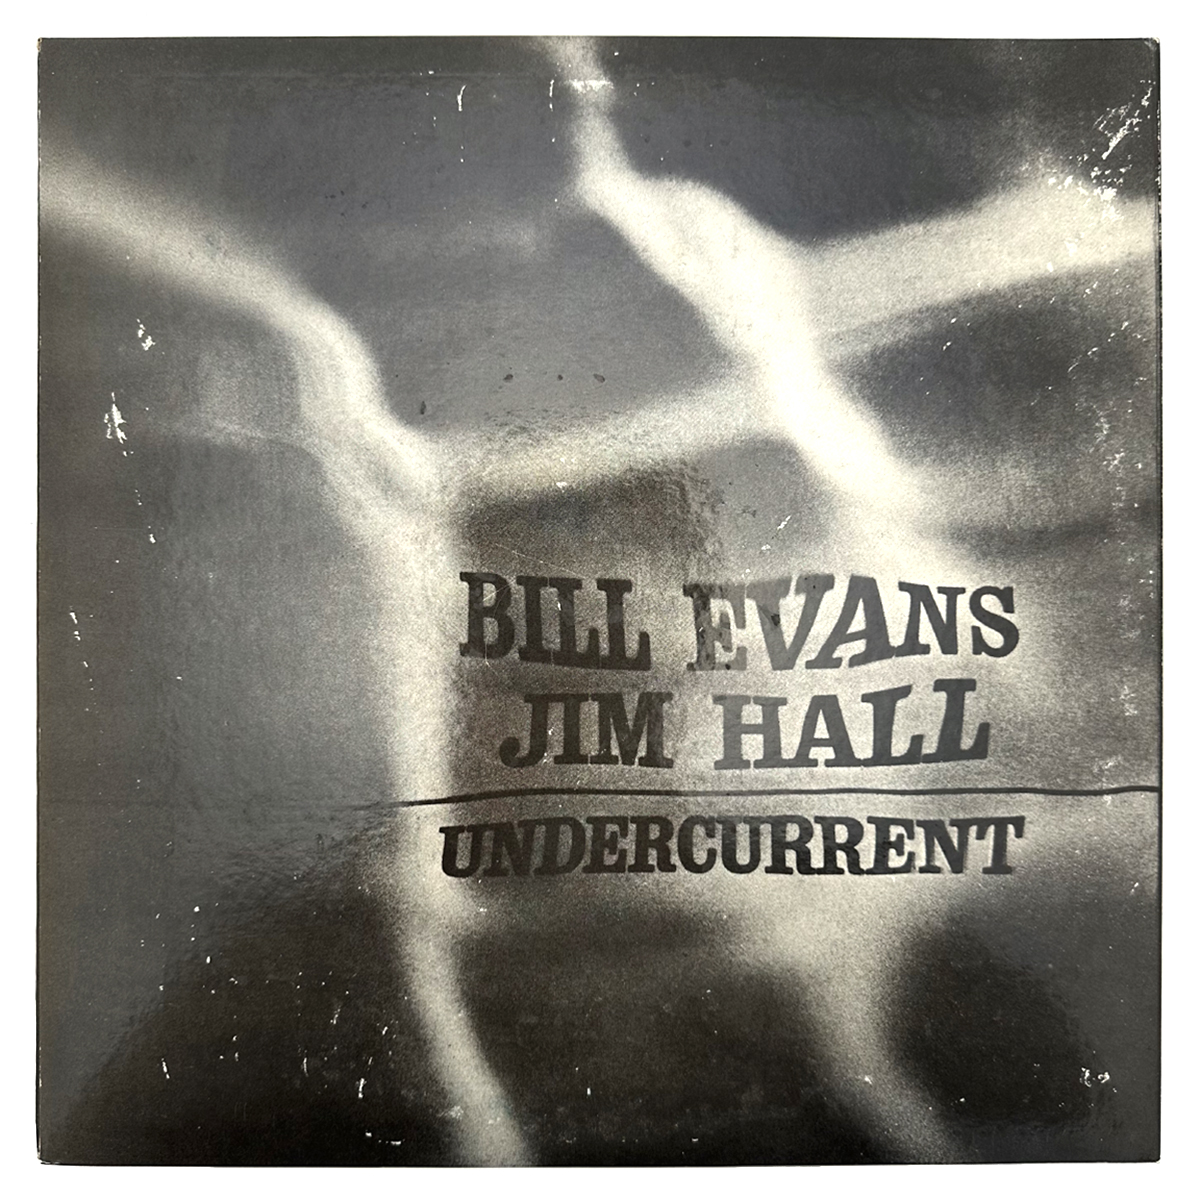 ビル エヴァンス/ジム ホール(BILL EVANS/JIM HALL) レコード 